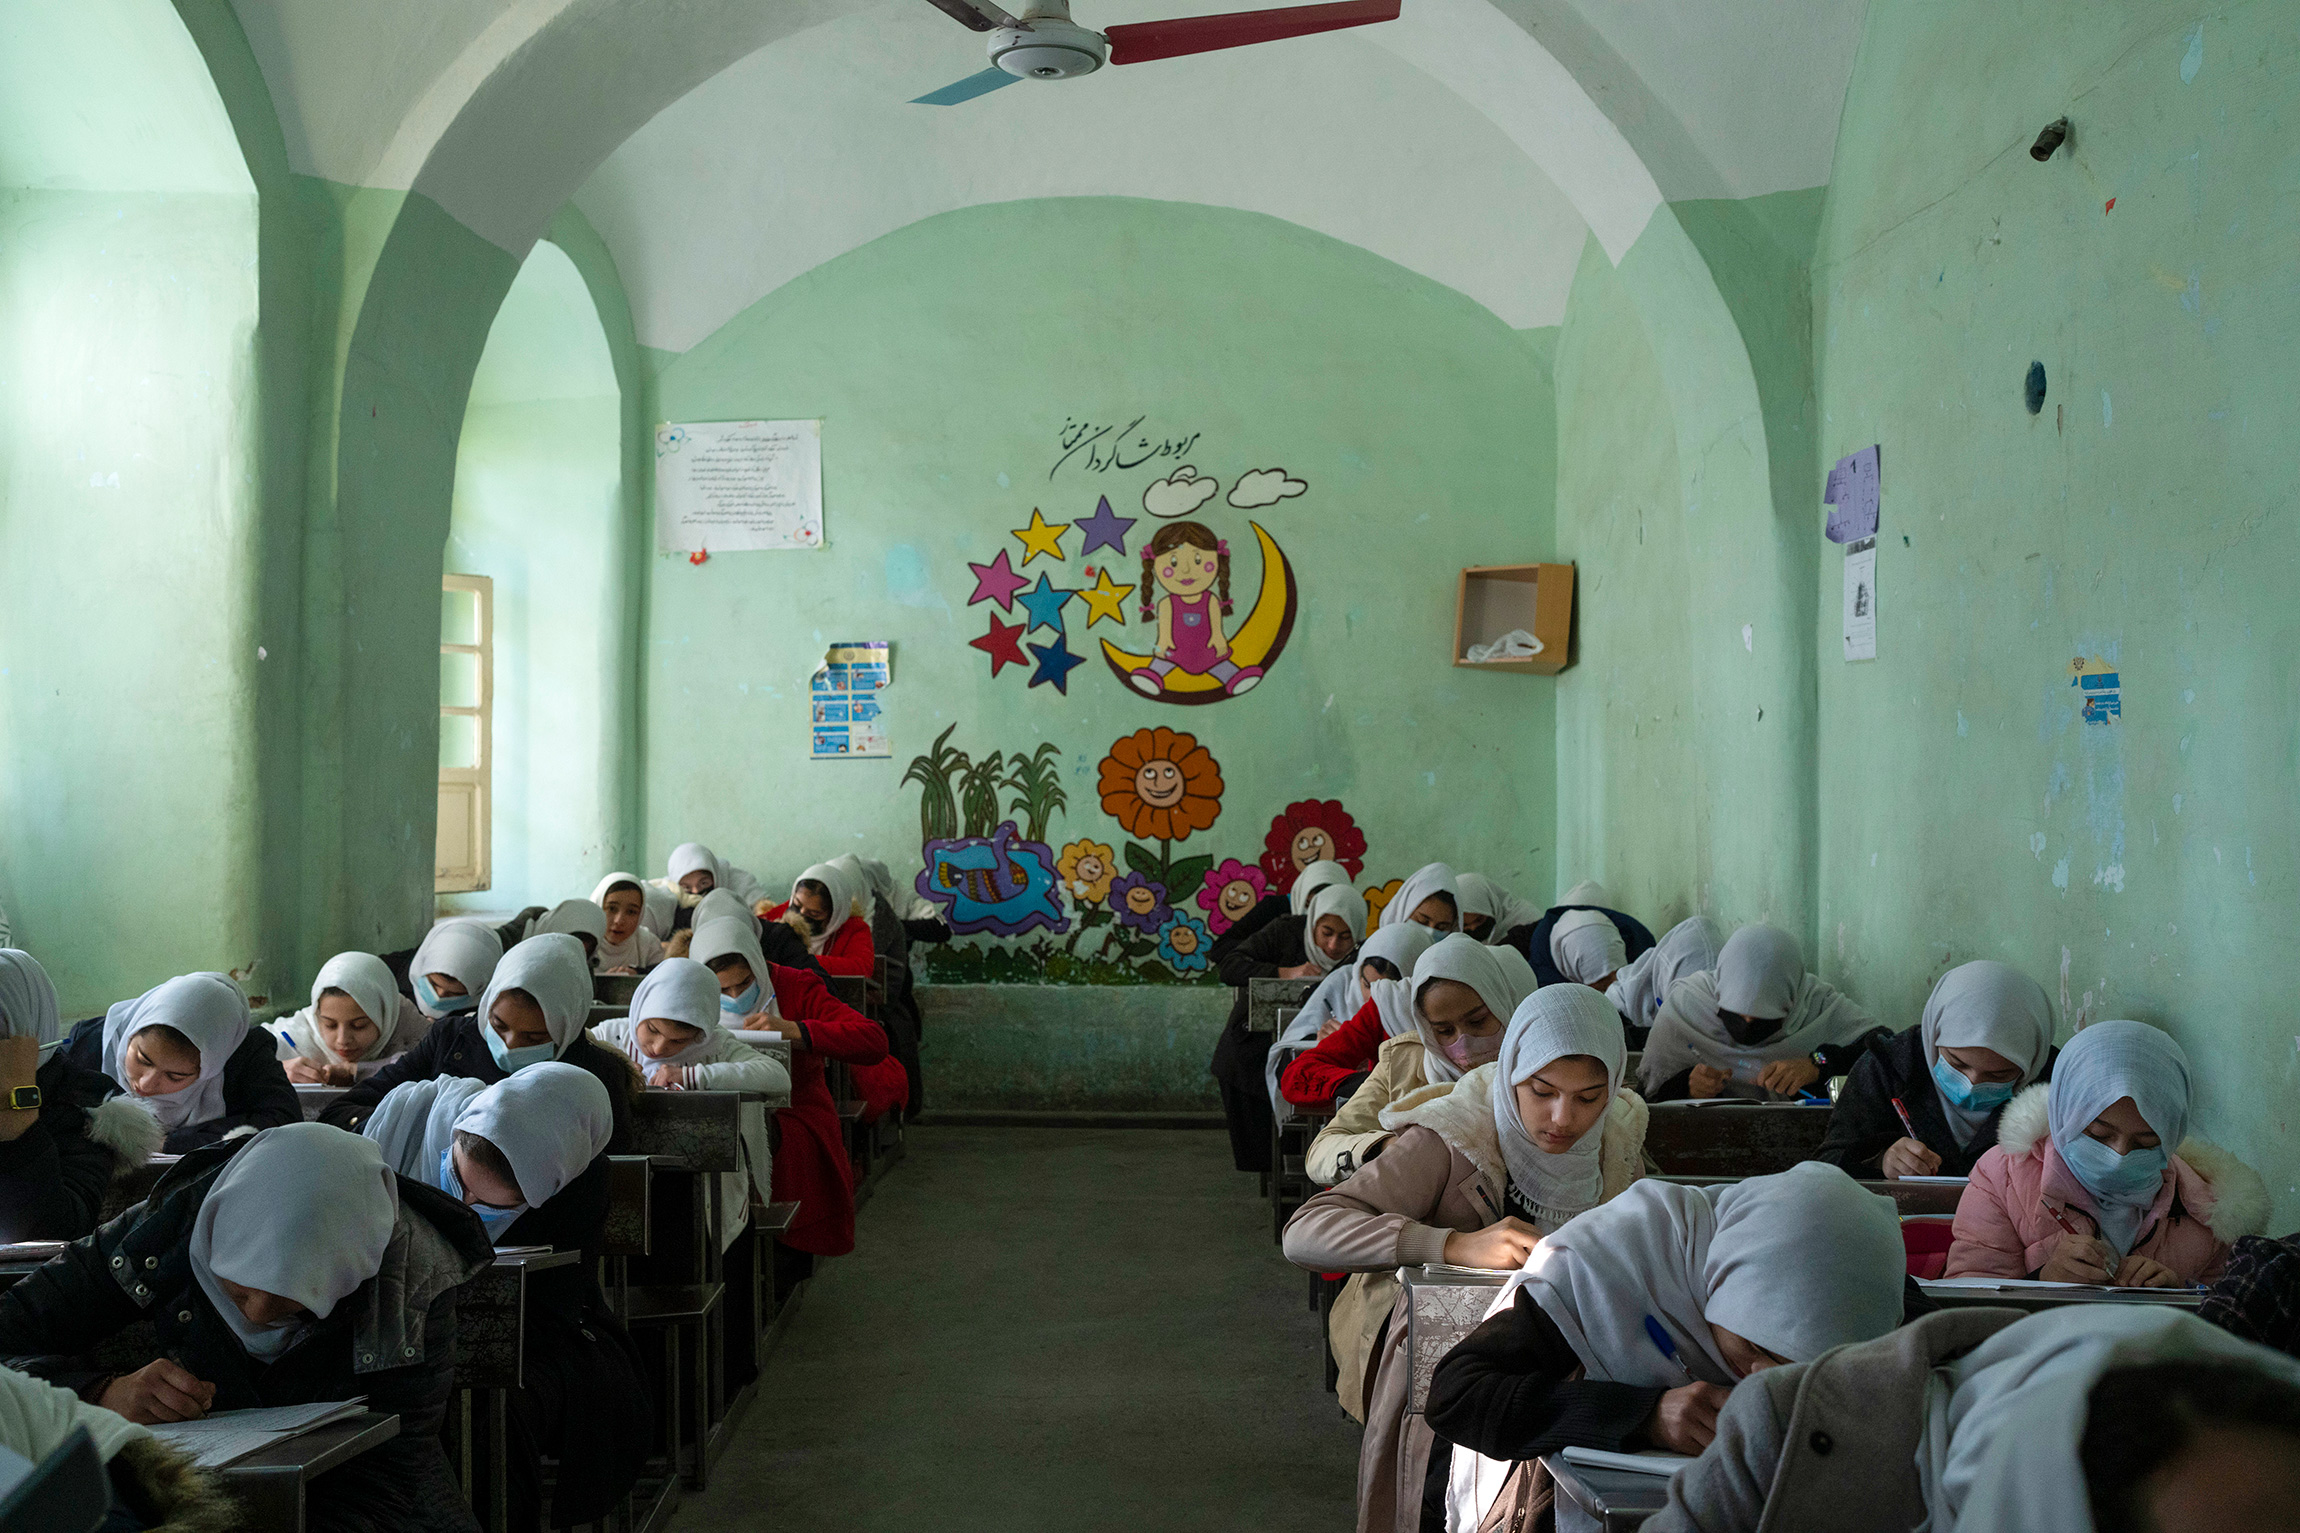 <p>На фото: афганские девочки в средней школе для девочек в Герате, Афганистан, 25 ноября 2021 года</p>

<p>После прихода к власти талибы приостановили работу школ для девочек. В марте 2022 года Министерство образования&nbsp;Афганистана <a href="https://tass.ru/obschestvo/14152709">заявило</a>, что средние и старшие школы для девочек будут закрыты до дальнейшего уведомления. В начале следующего учебного года к занятиям смогут приступить только девочки до шестого класса.</p>

<p>Этот запрет де-факто делает невозможным получение высшего образования девушками. &laquo;Автоматически, если у нас не будет выпускников средних школ, у нас больше не будет новых студенток университетов&raquo;,&nbsp;&mdash; <a href="https://www.theguardian.com/global-development/2022/aug/01/taliban-policies-risk-de-facto-university-ban-for-afghan-women-say-officials">сказал</a> представитель Министерства высшего образования талибов Маулави Ахмед Таки.</p>

<p>В западной провинции Герат учителя и родители смогли убедить администрацию &laquo;Талибана&raquo; открыть школы для девочек. В конце июня стало <a href="https://www.ariananews.af/issue-of-girls-education-raised-at-gathering-of-religious-scholars-in-kabul/">известно</a>, что минимум один из участников крупного собрания исламских ученых в Кабуле Сайед Насрулла Вайзи призвал к открытию средних школ для девочек. &laquo;Они будут учиться и будут хорошим проводником для своих детей в обществе&raquo;,&nbsp;&mdash; пояснил он</p>